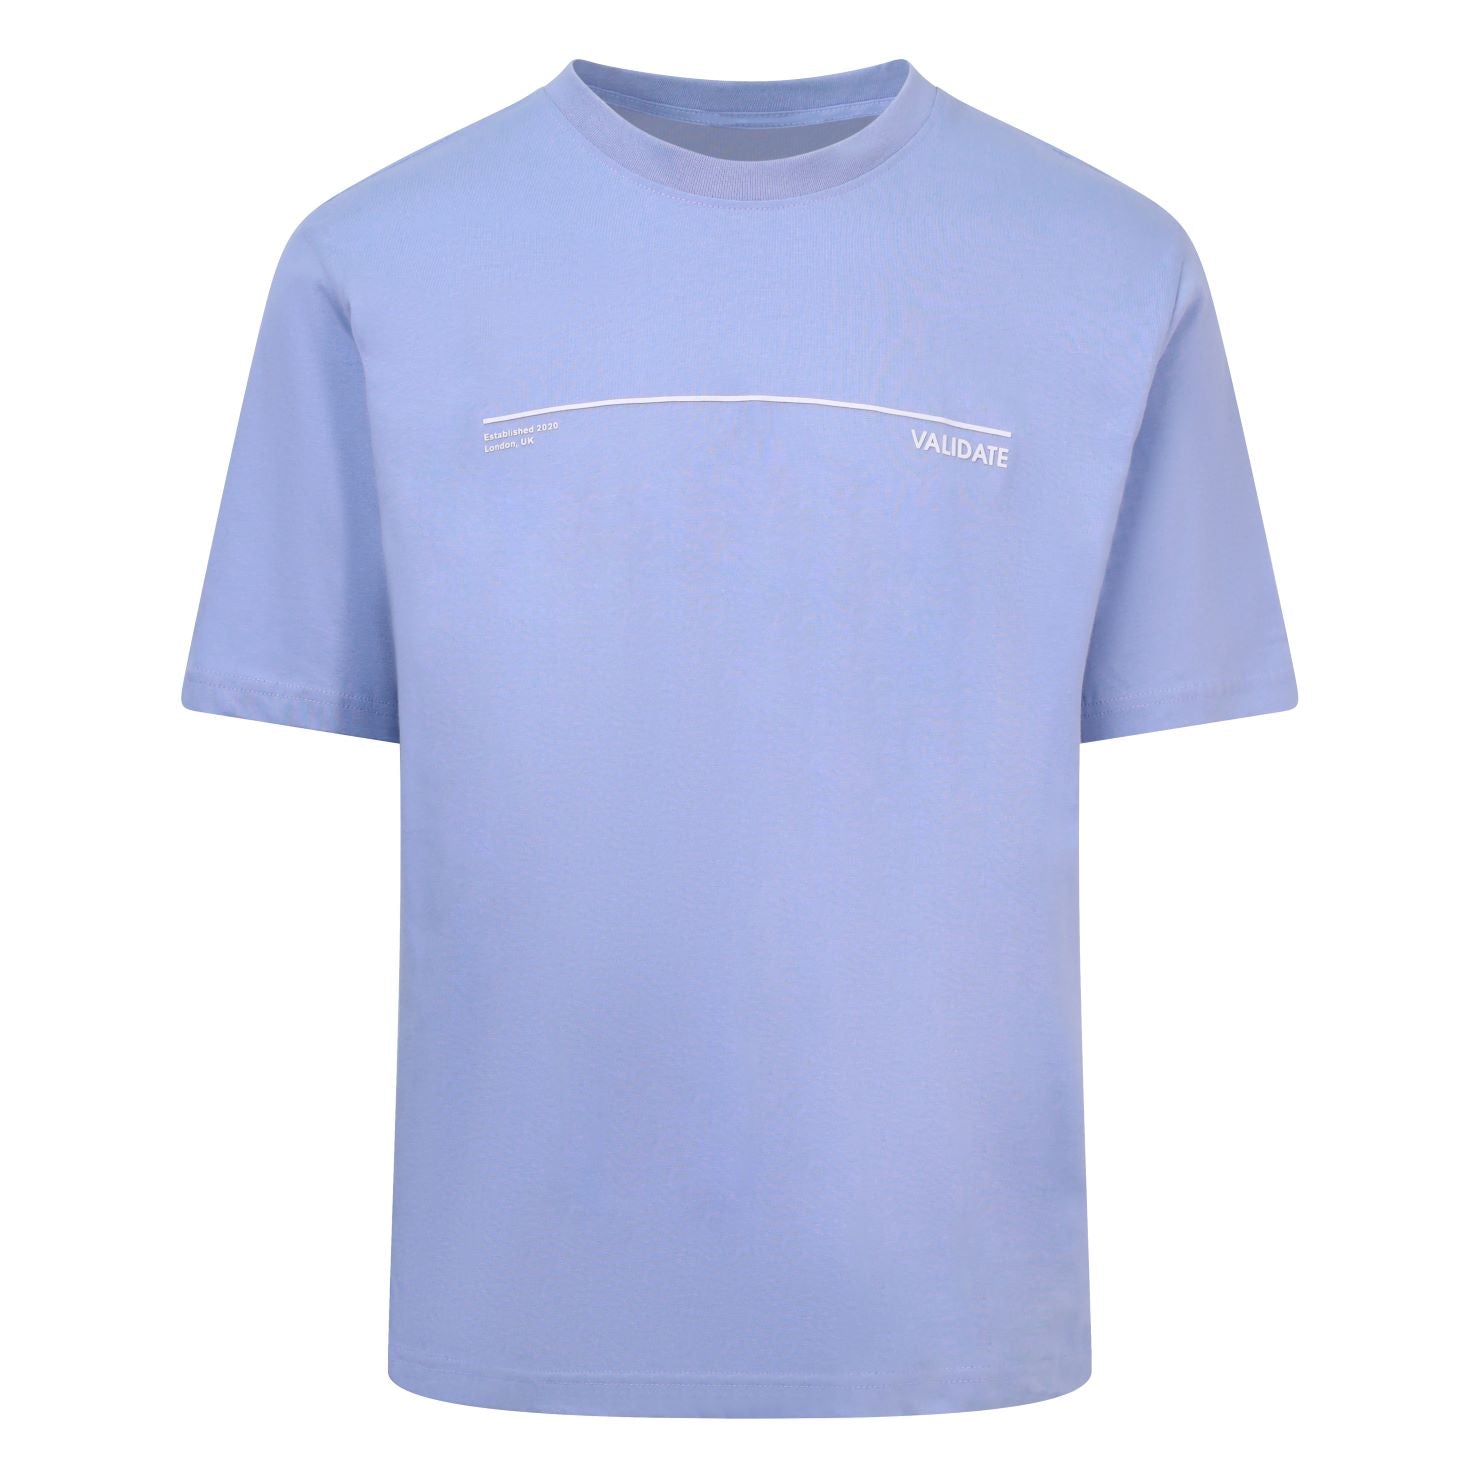 Validate Men's Lino TShirt Blue